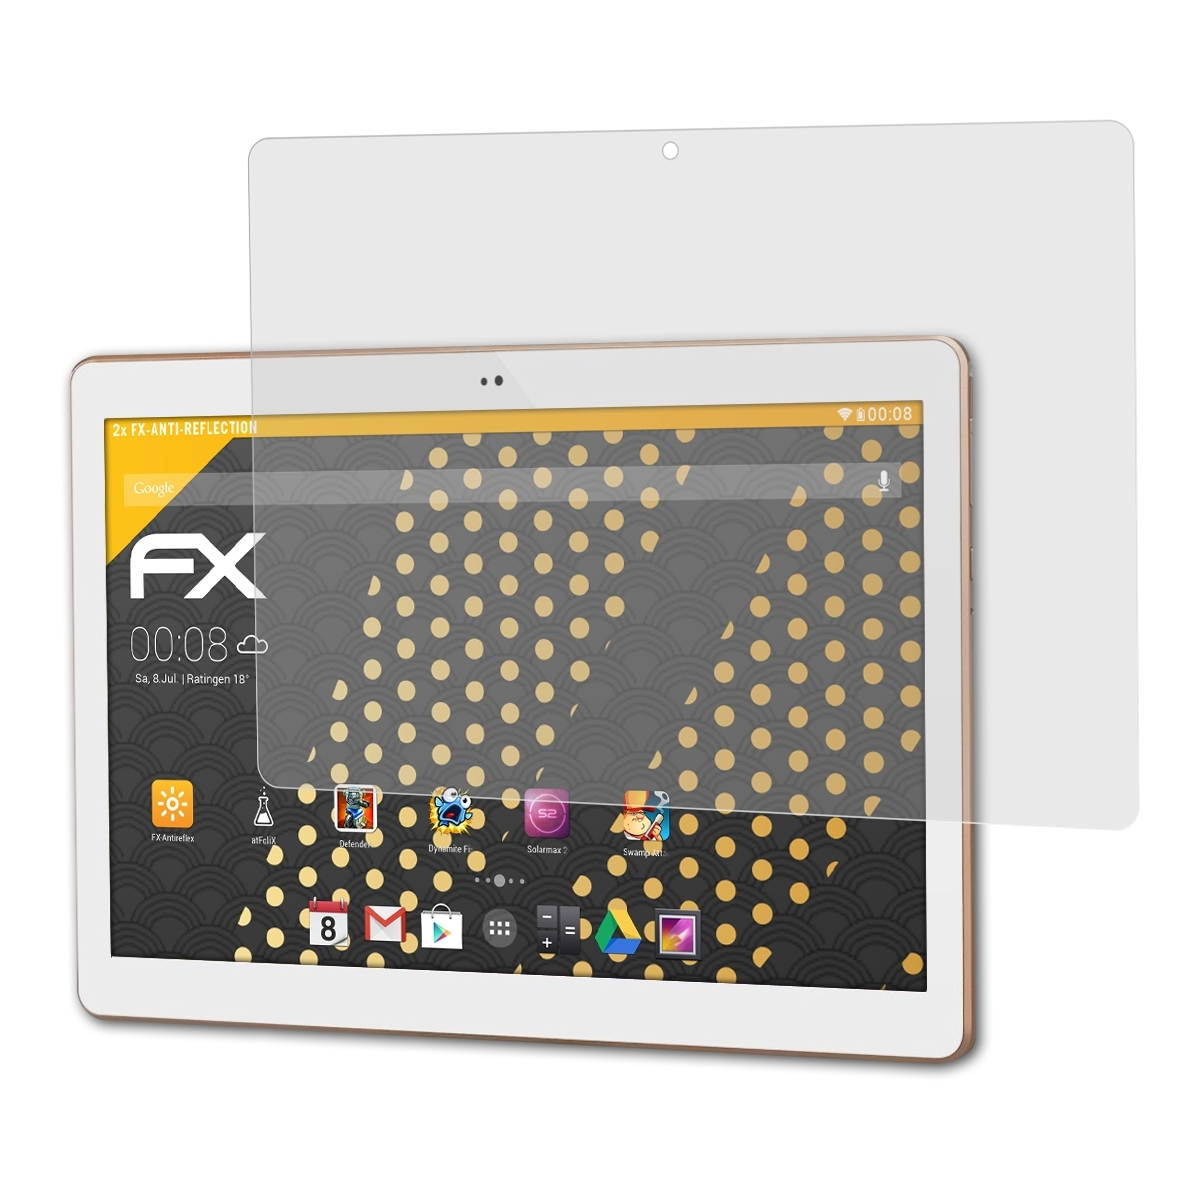 A101) 2x Acepad ATFOLIX FX-Antireflex Displayschutz(für